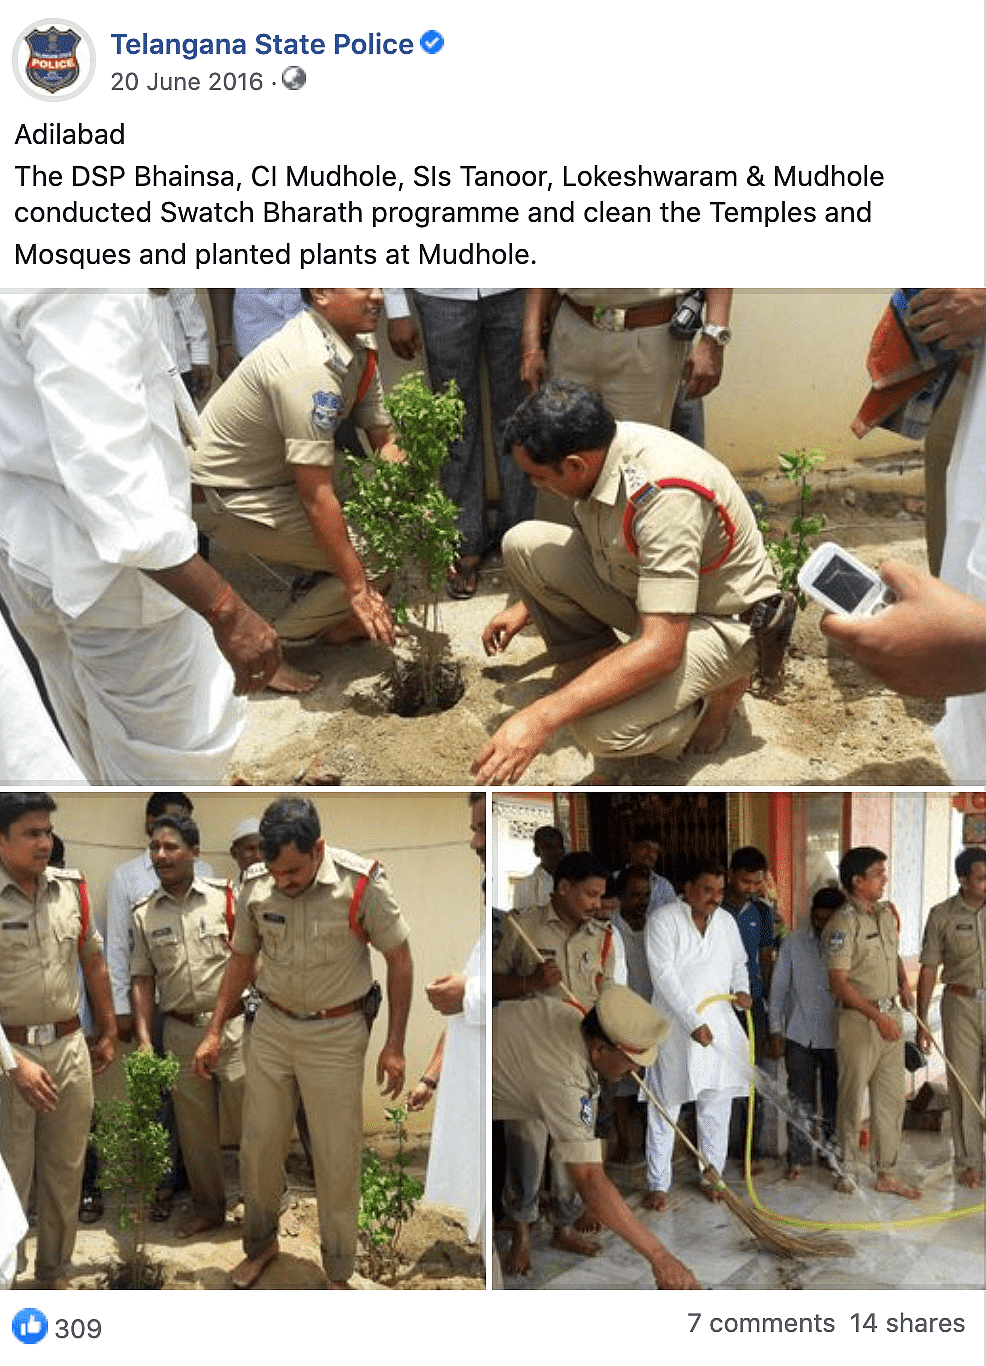 ये फोटो 2016 की है, जब तेलंगाना पुलिस ने स्वच्छ भारत कार्यक्रम के तहत मंदिरों और मस्जिदों में सफाई की थी.